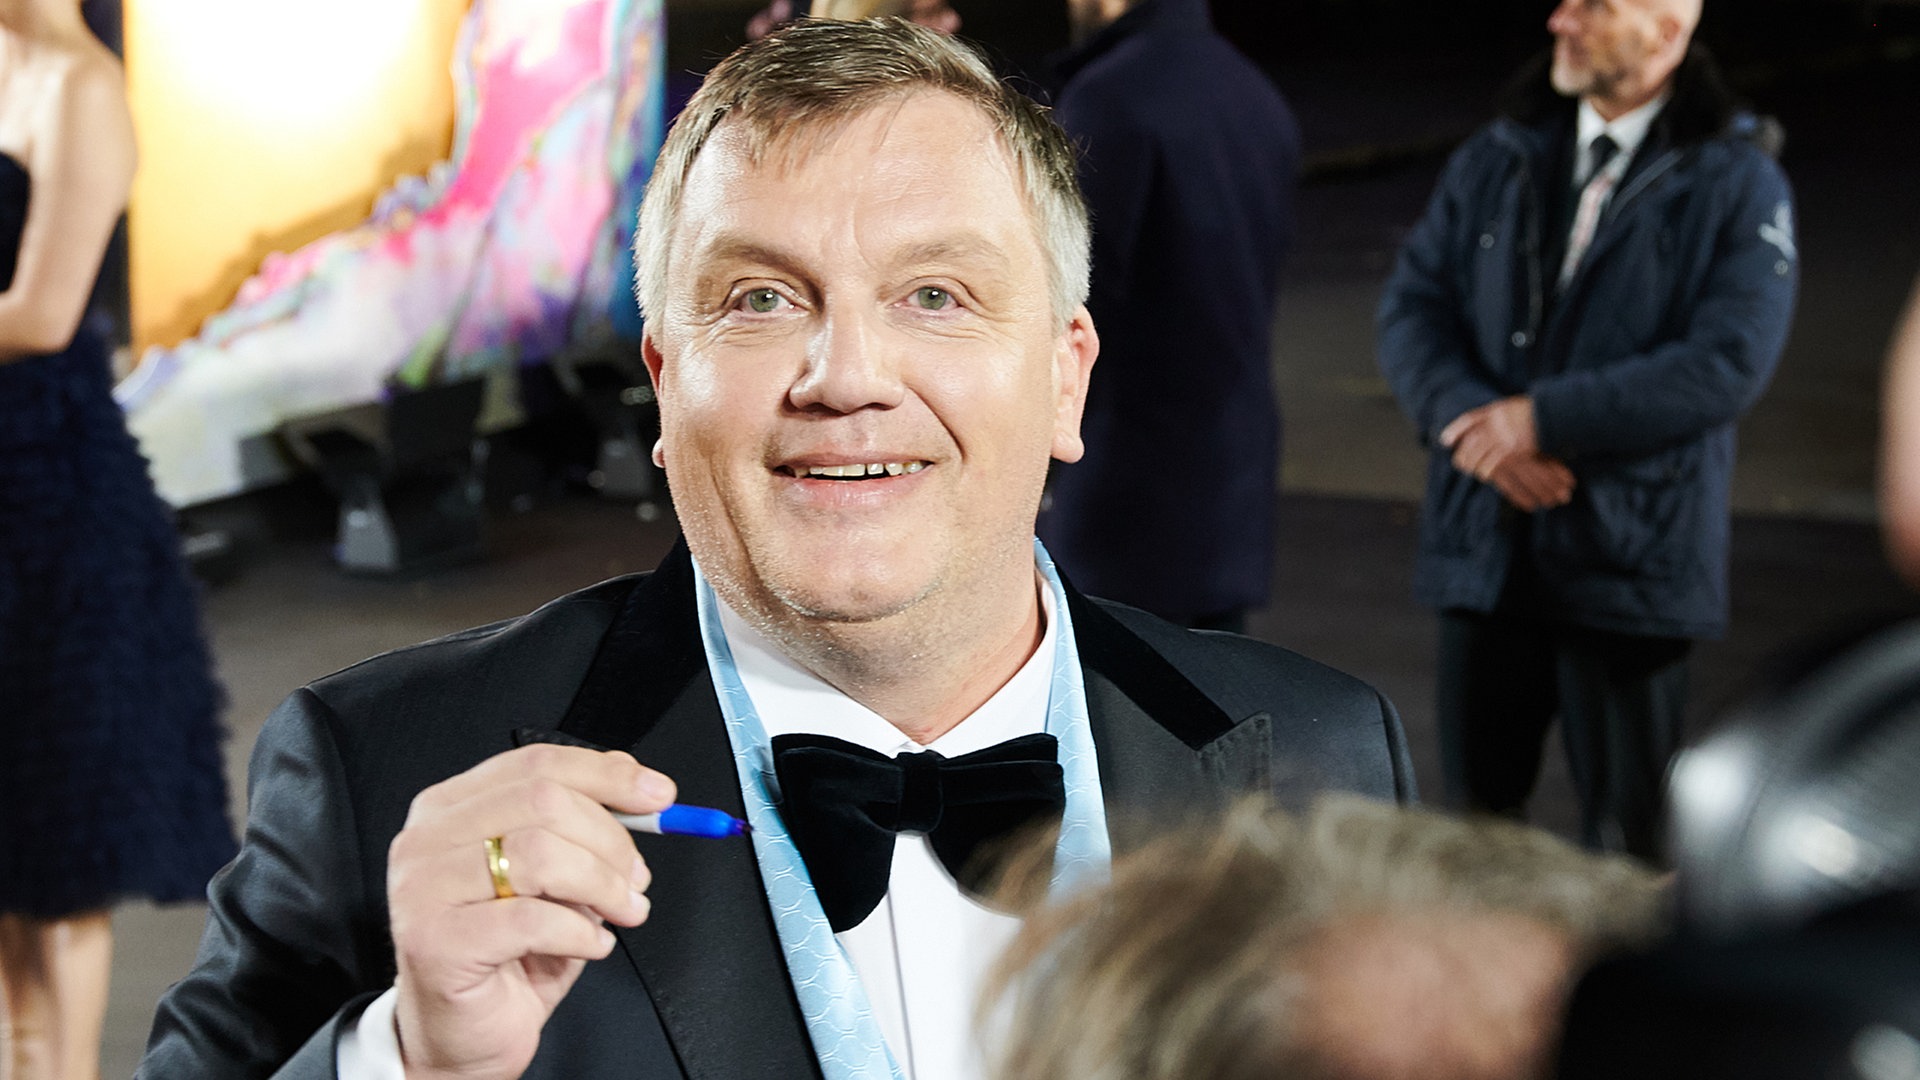 Bremer Filmpreis Hape Kerkeling Bekommt Goldenen Mops Ndr De Kultur Film